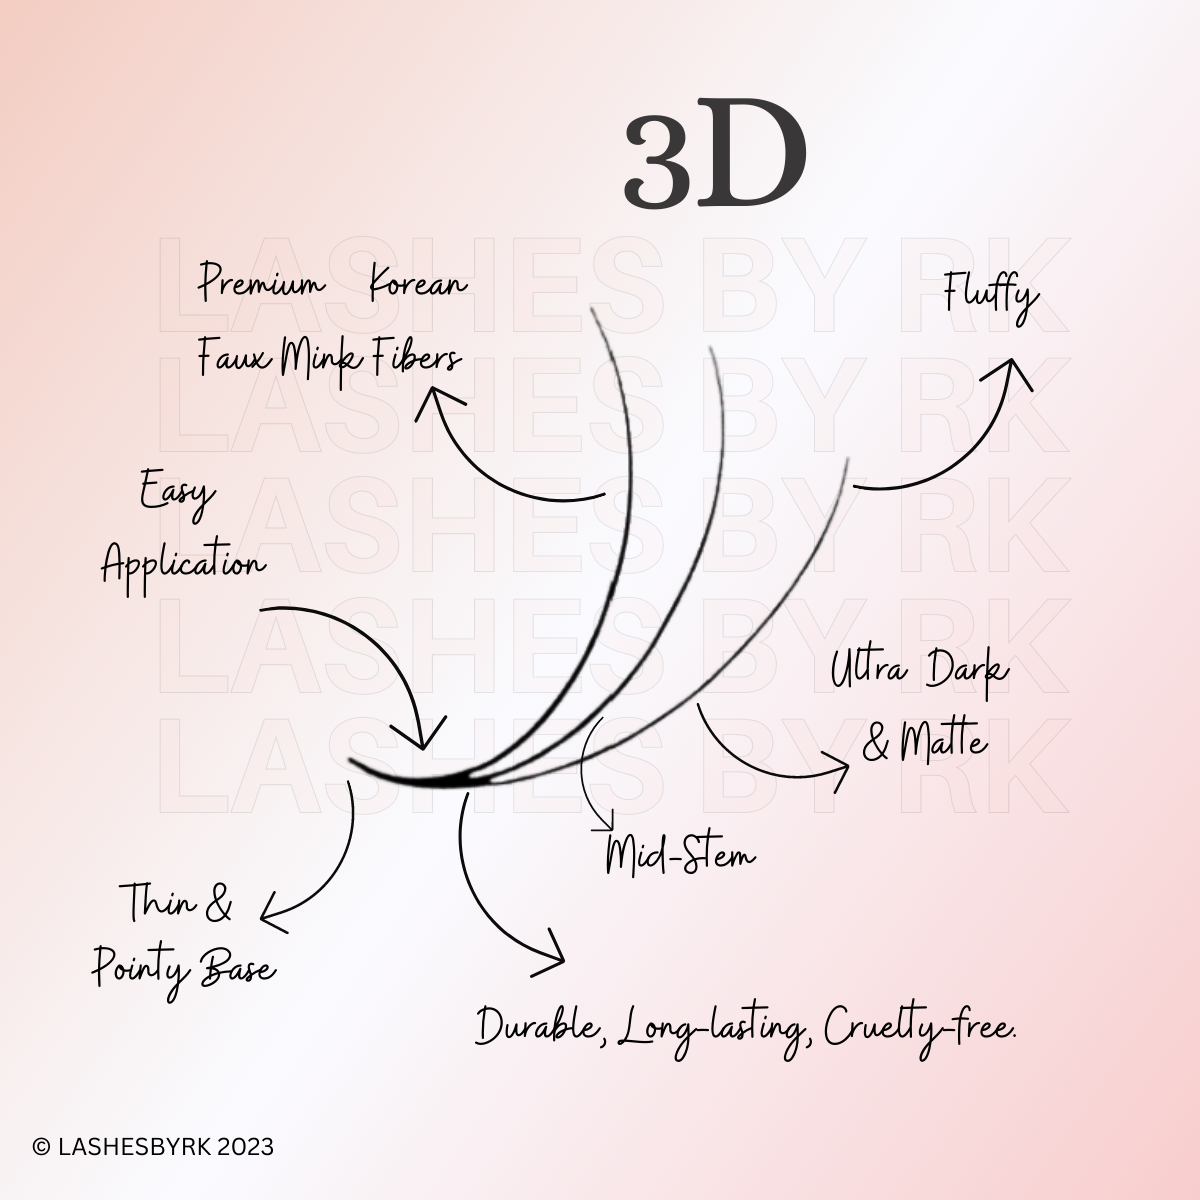 3D | Bundle Speedy/Rapid Promade